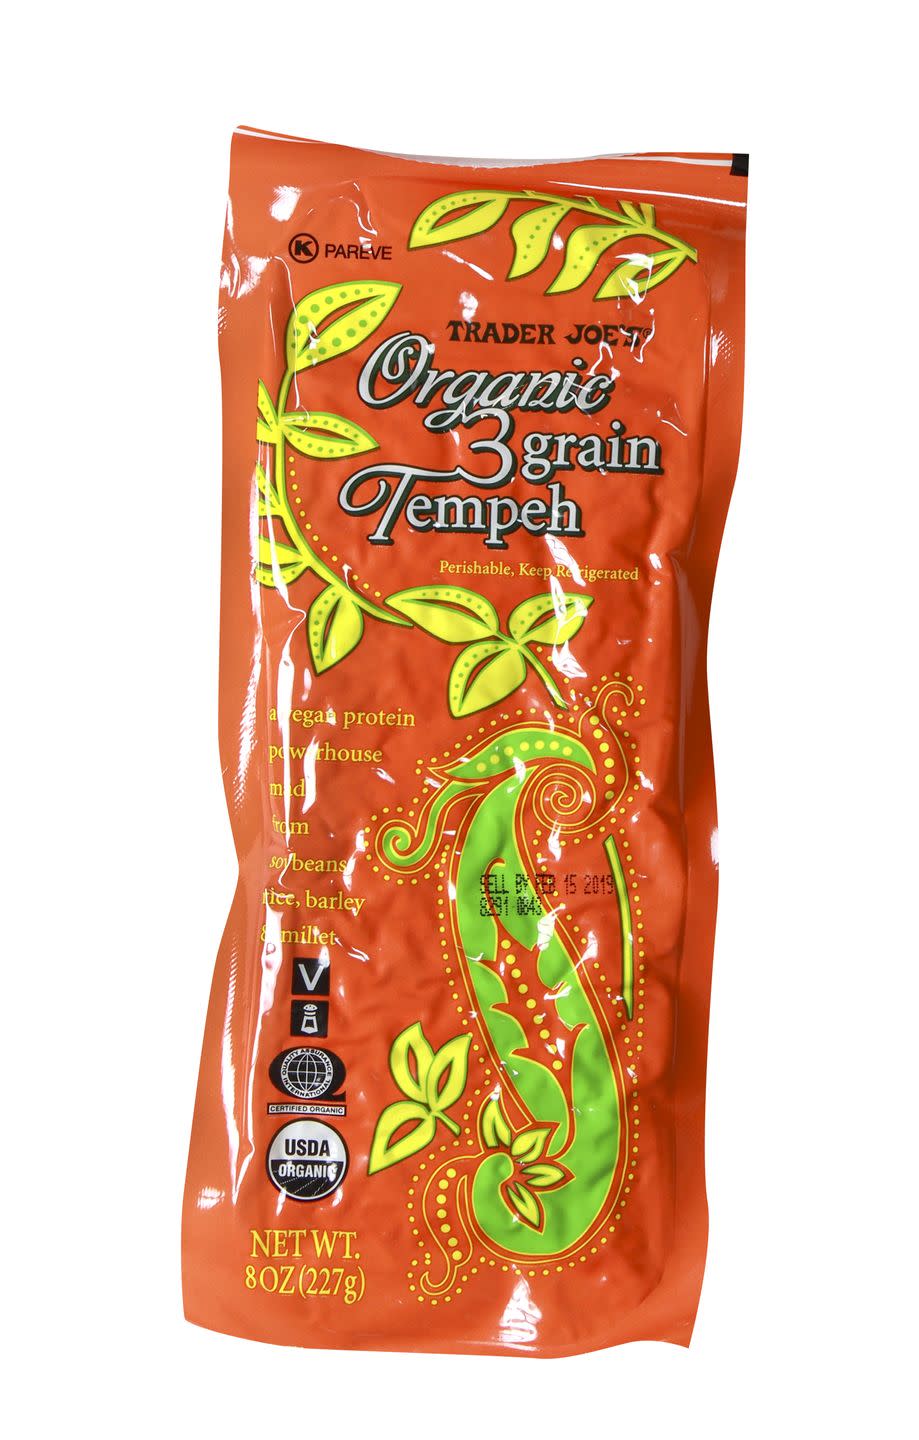 Organic 3-Grain Tempeh